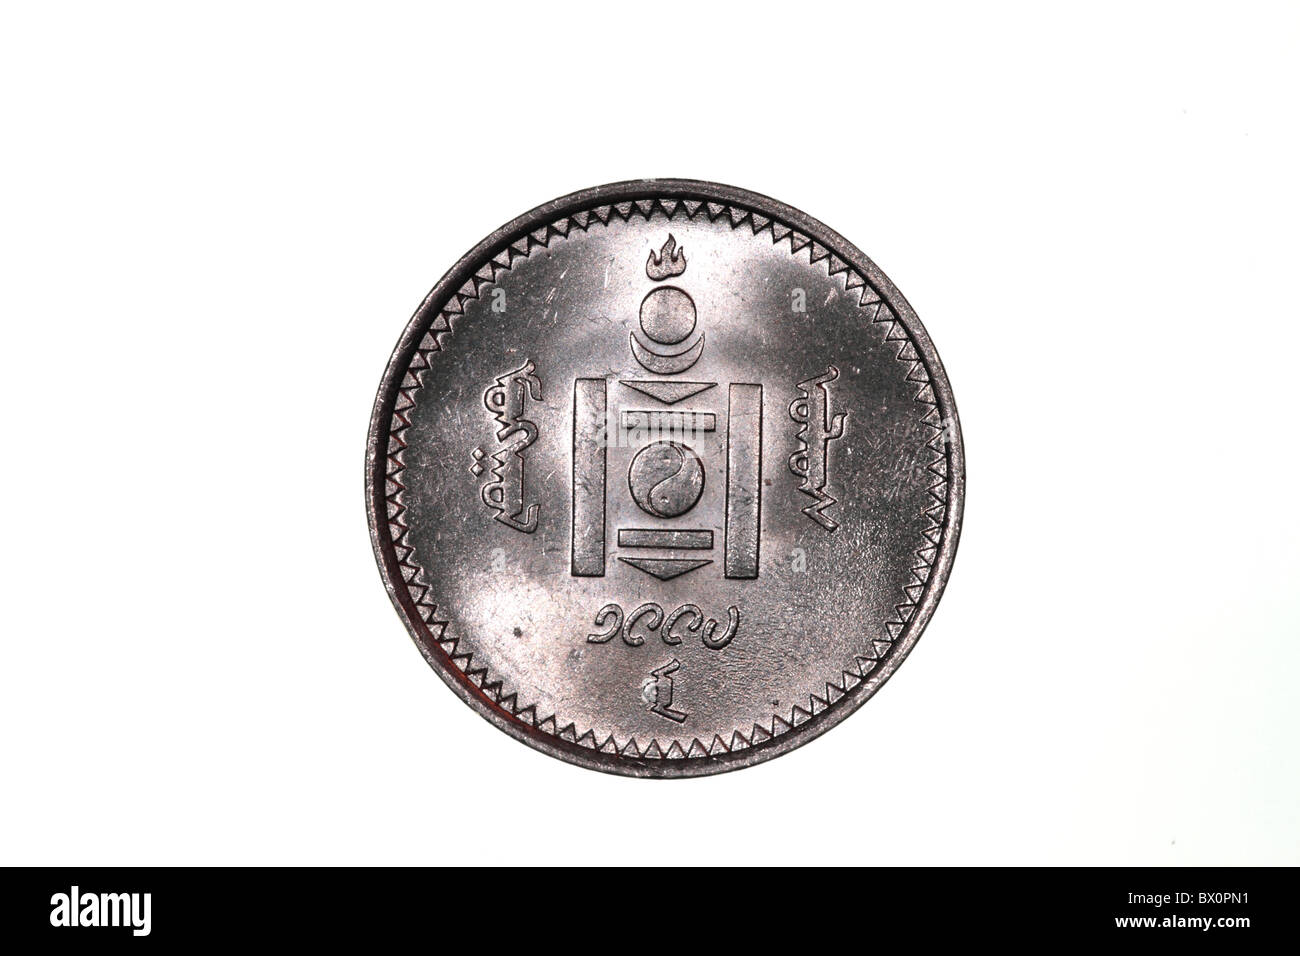 Mongolian coin Stock Photo